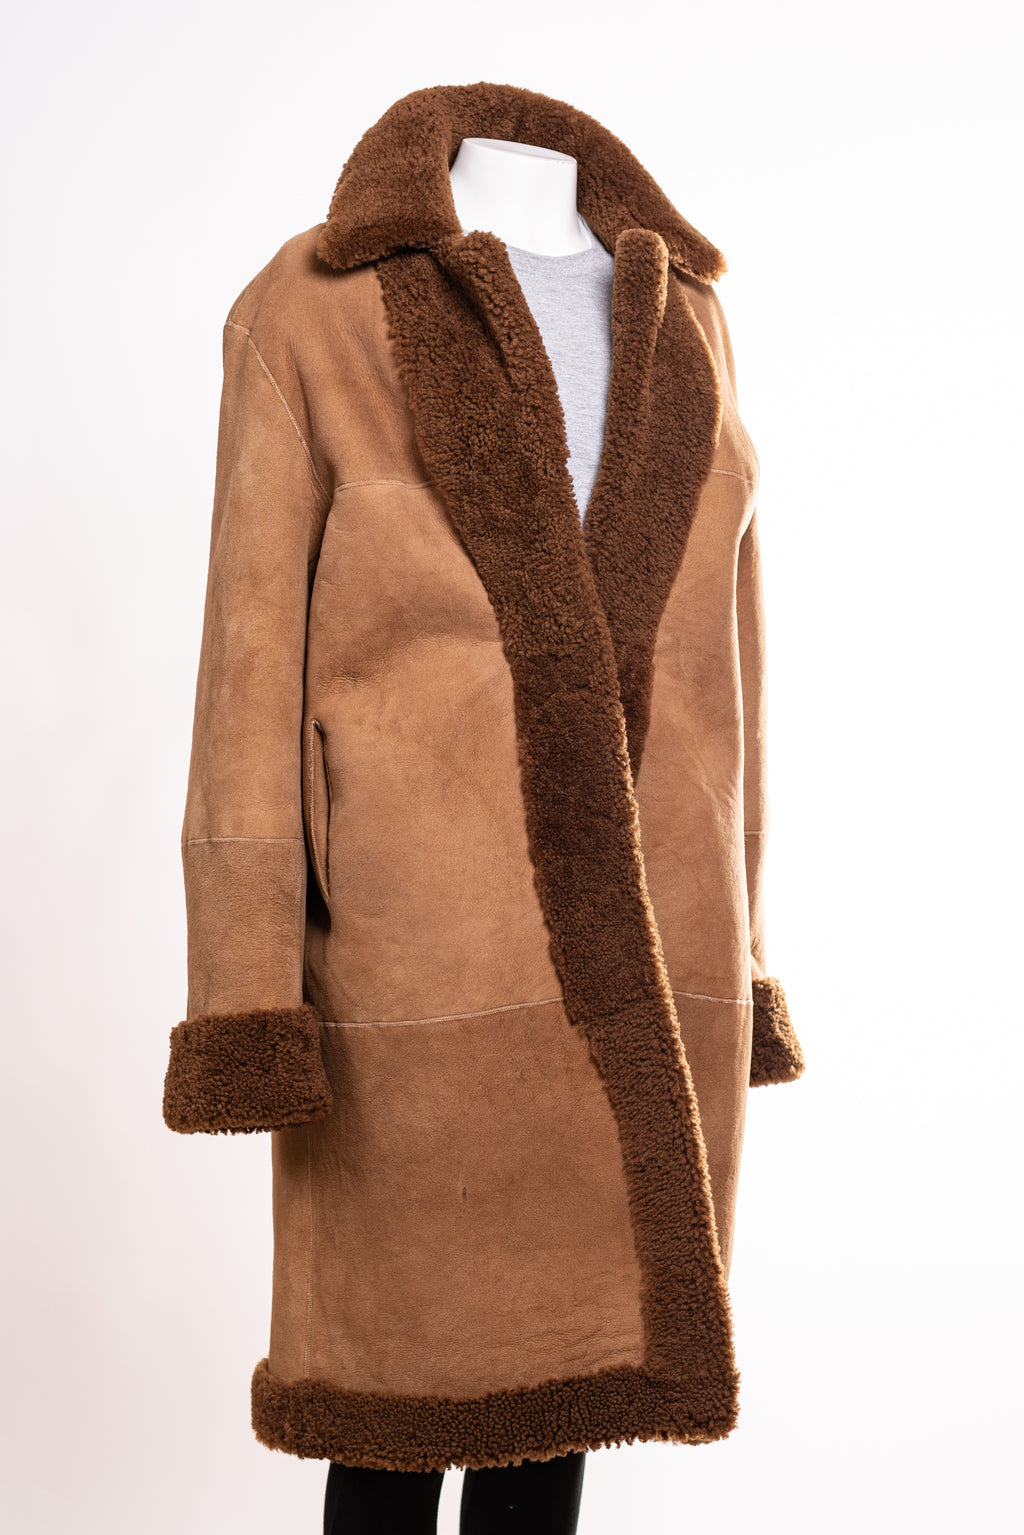 Women's Reversible Teddy Bear Sheepskin Coat: Janet